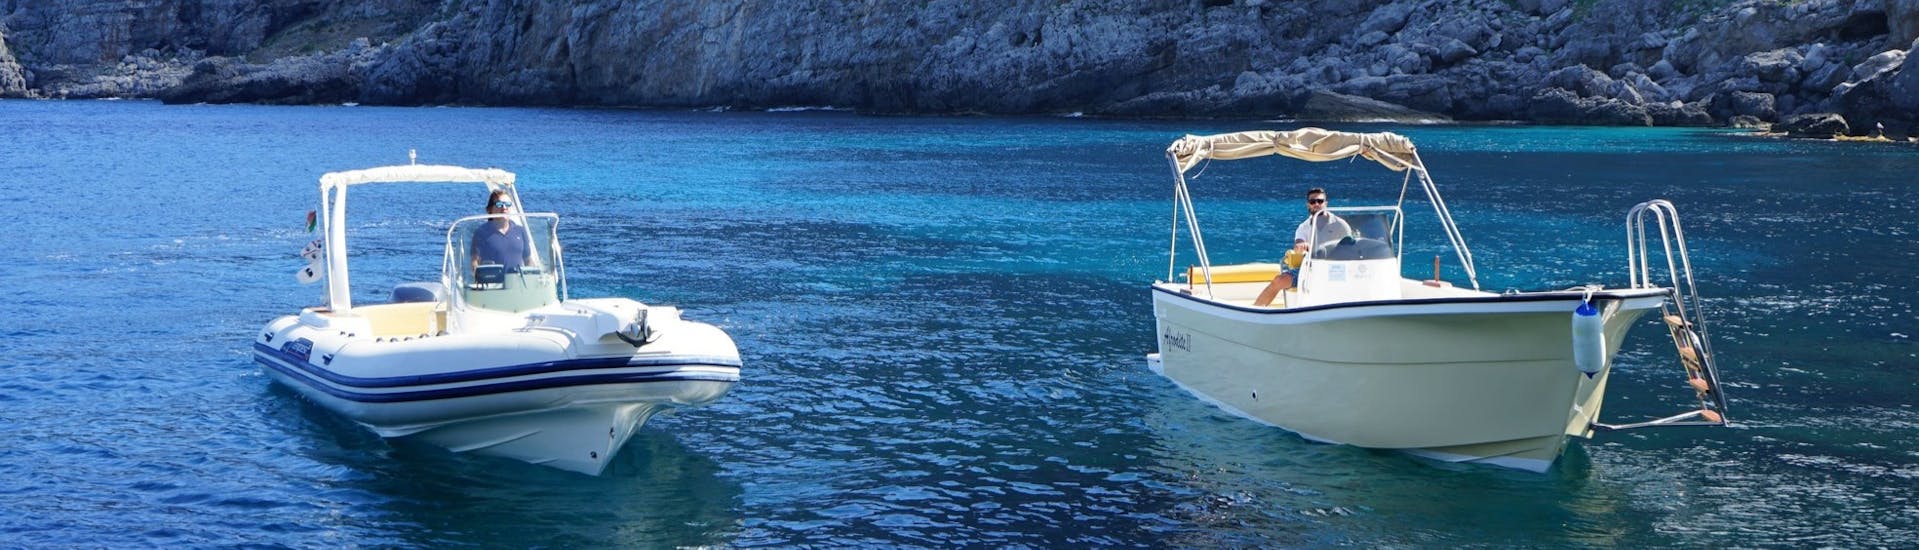 Gita in barca da Marettimo a Favignana e Levanzo con soste per nuotare.